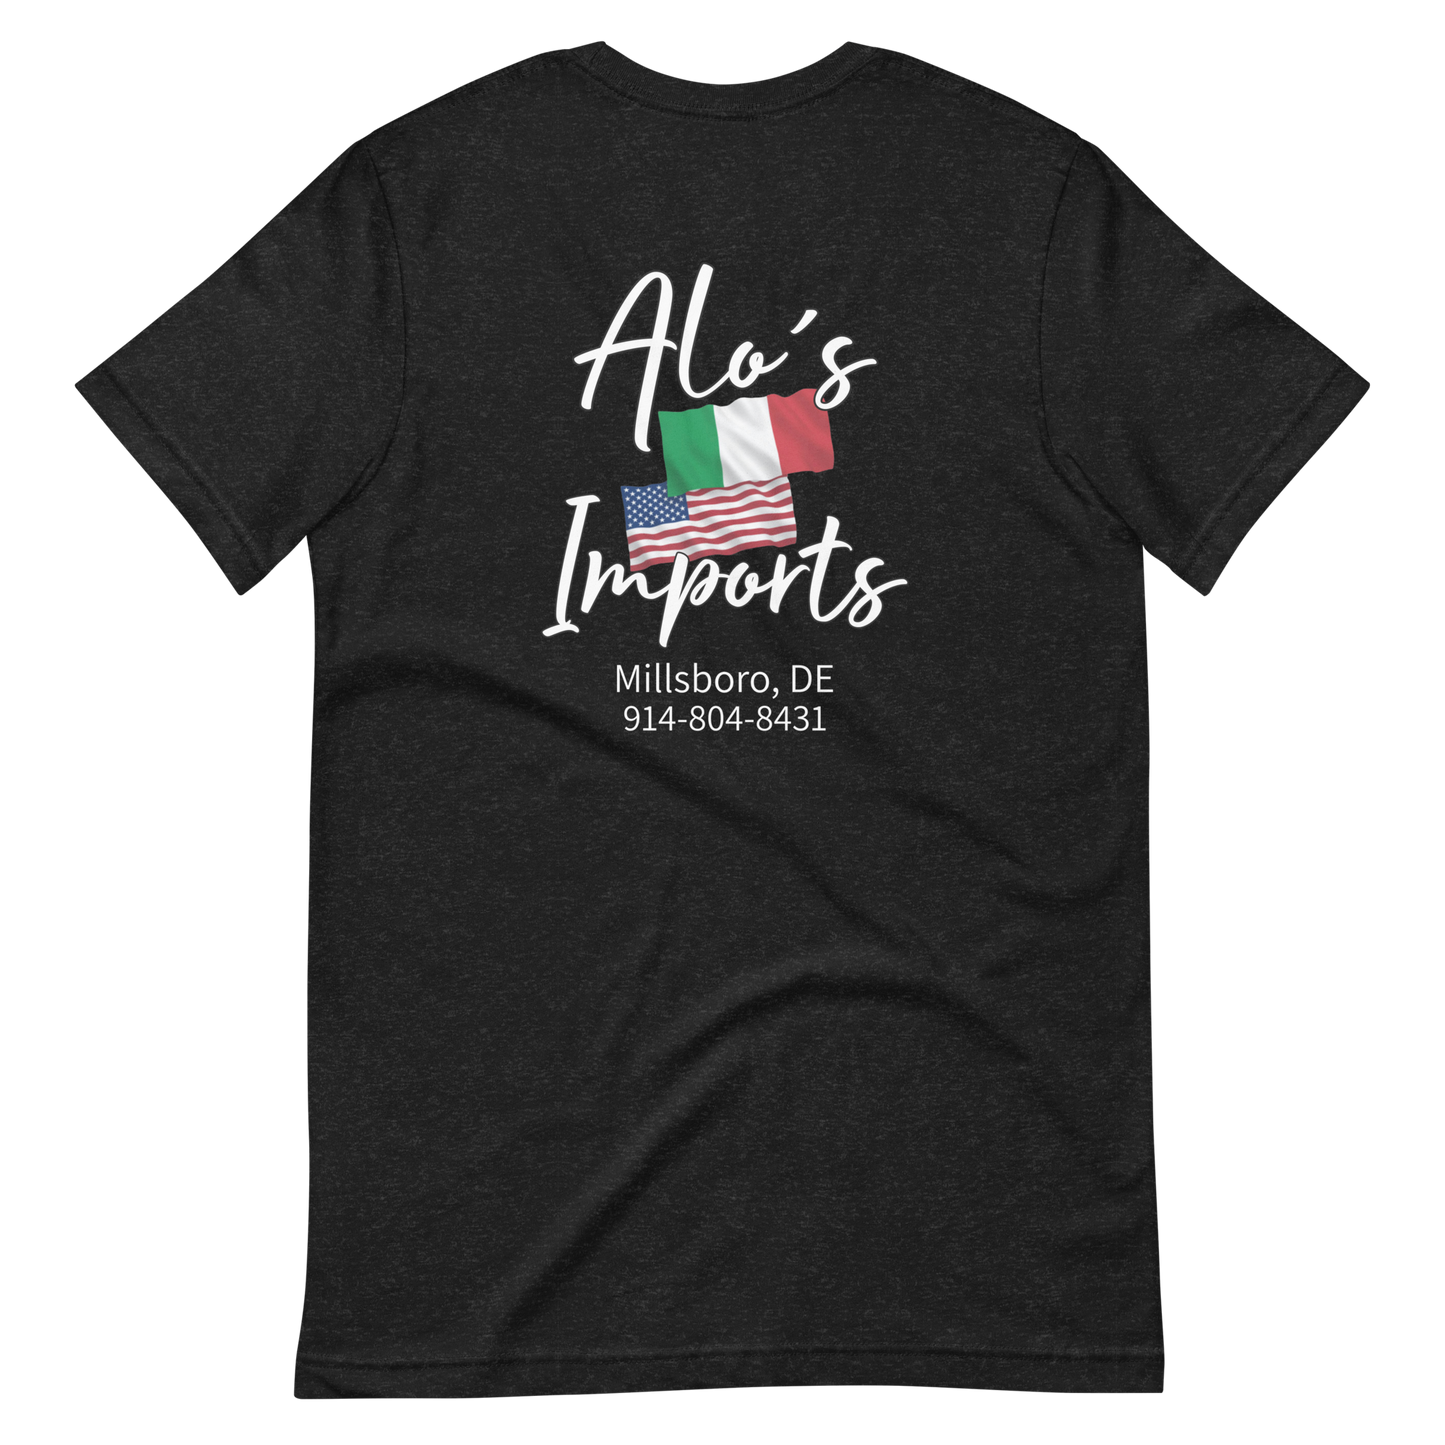 Alo’s Imports Black Short Sleeve